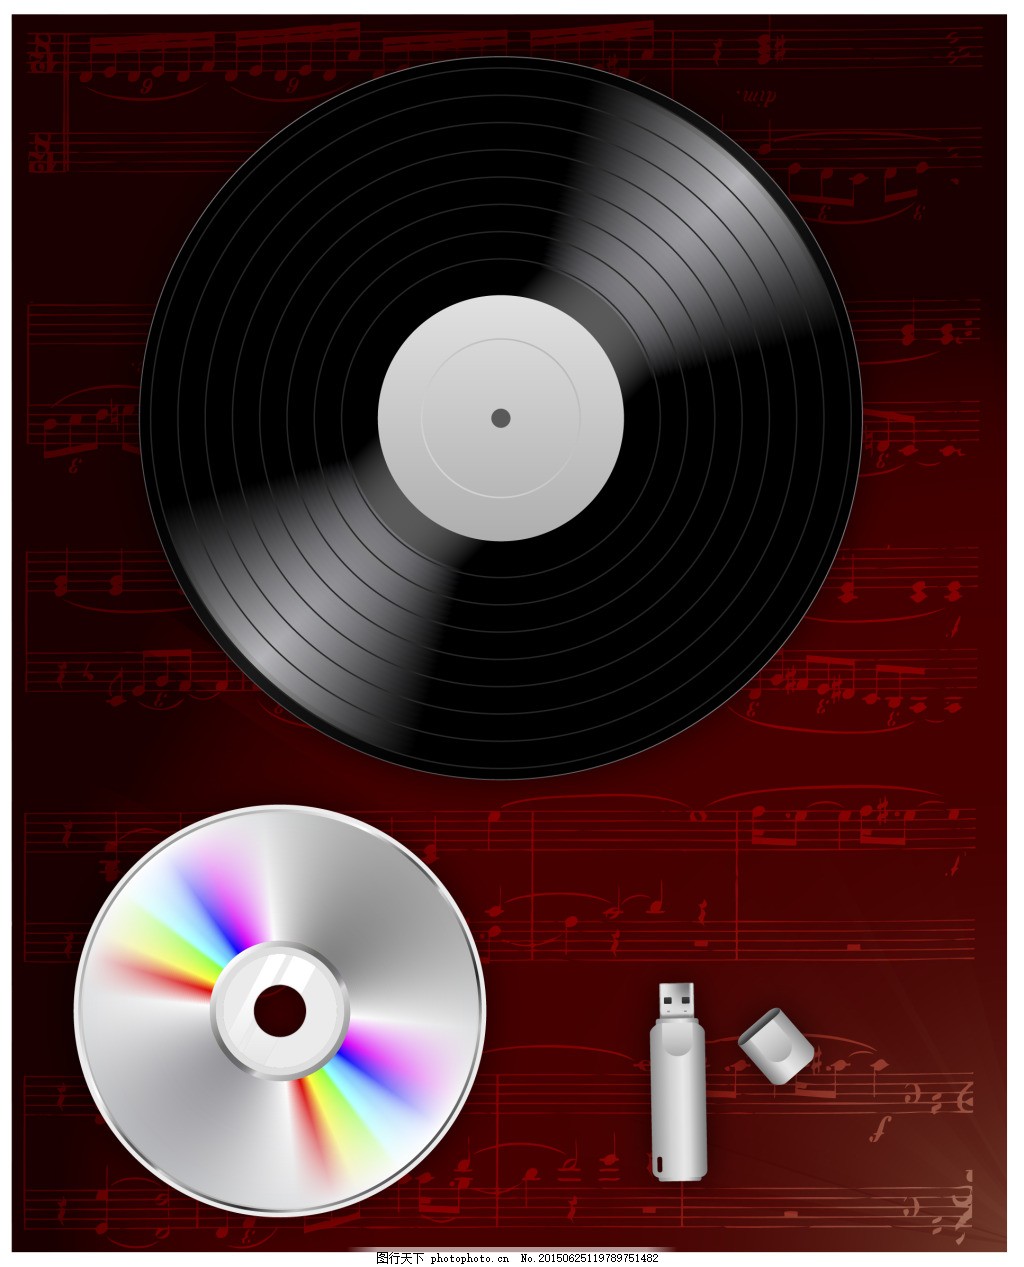 唱片CD,矢量图 彩色 黑色-图行天下图库